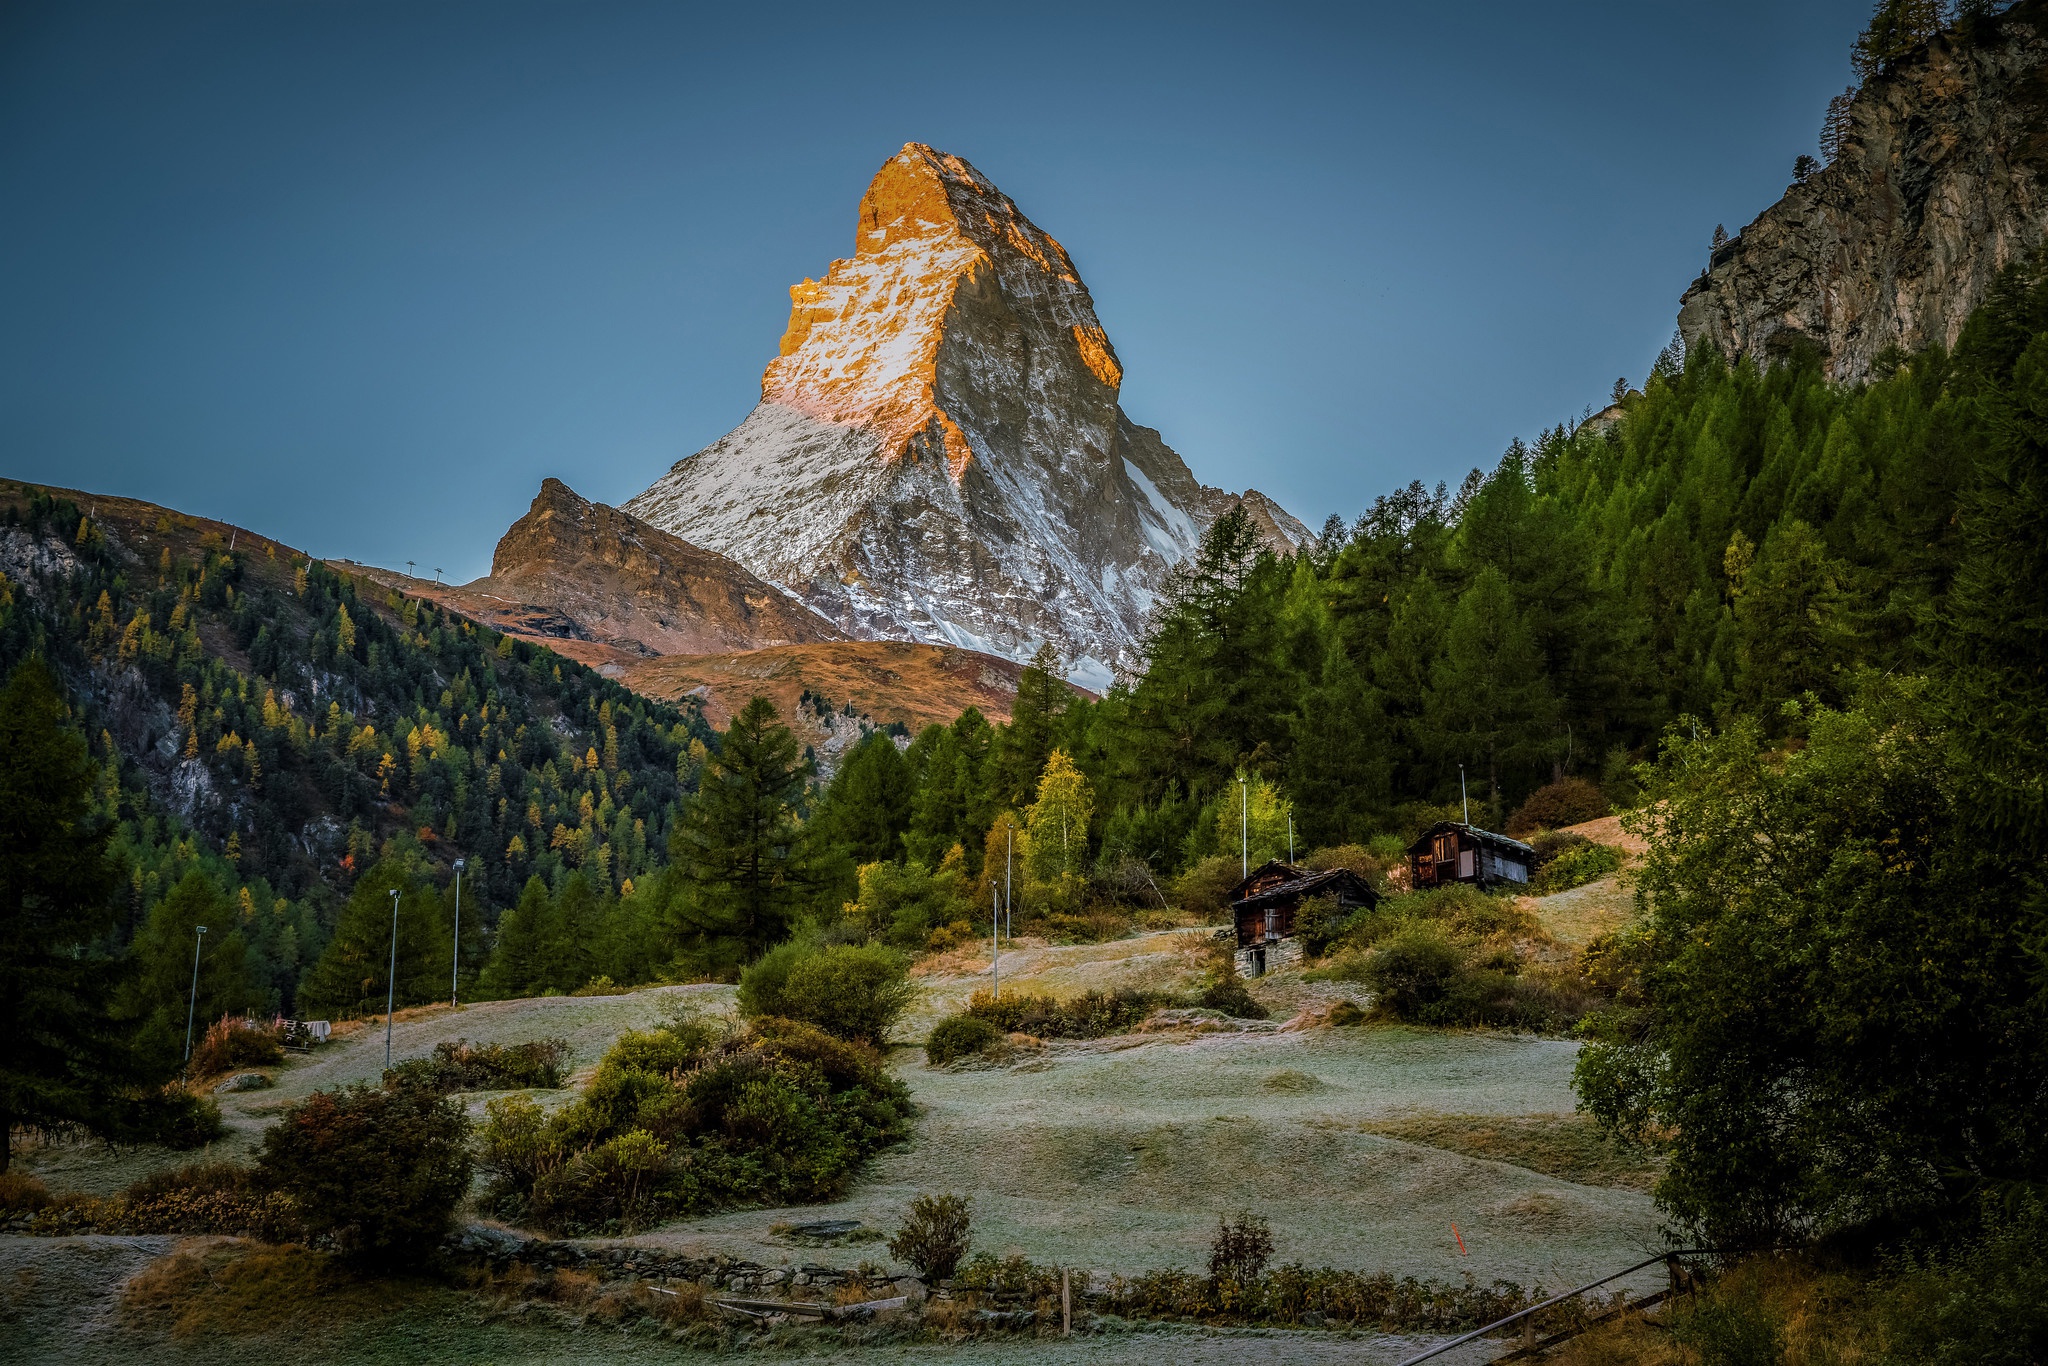 General 2048x1366 Matterhorn mountains nature outdoors landscape Switzerland